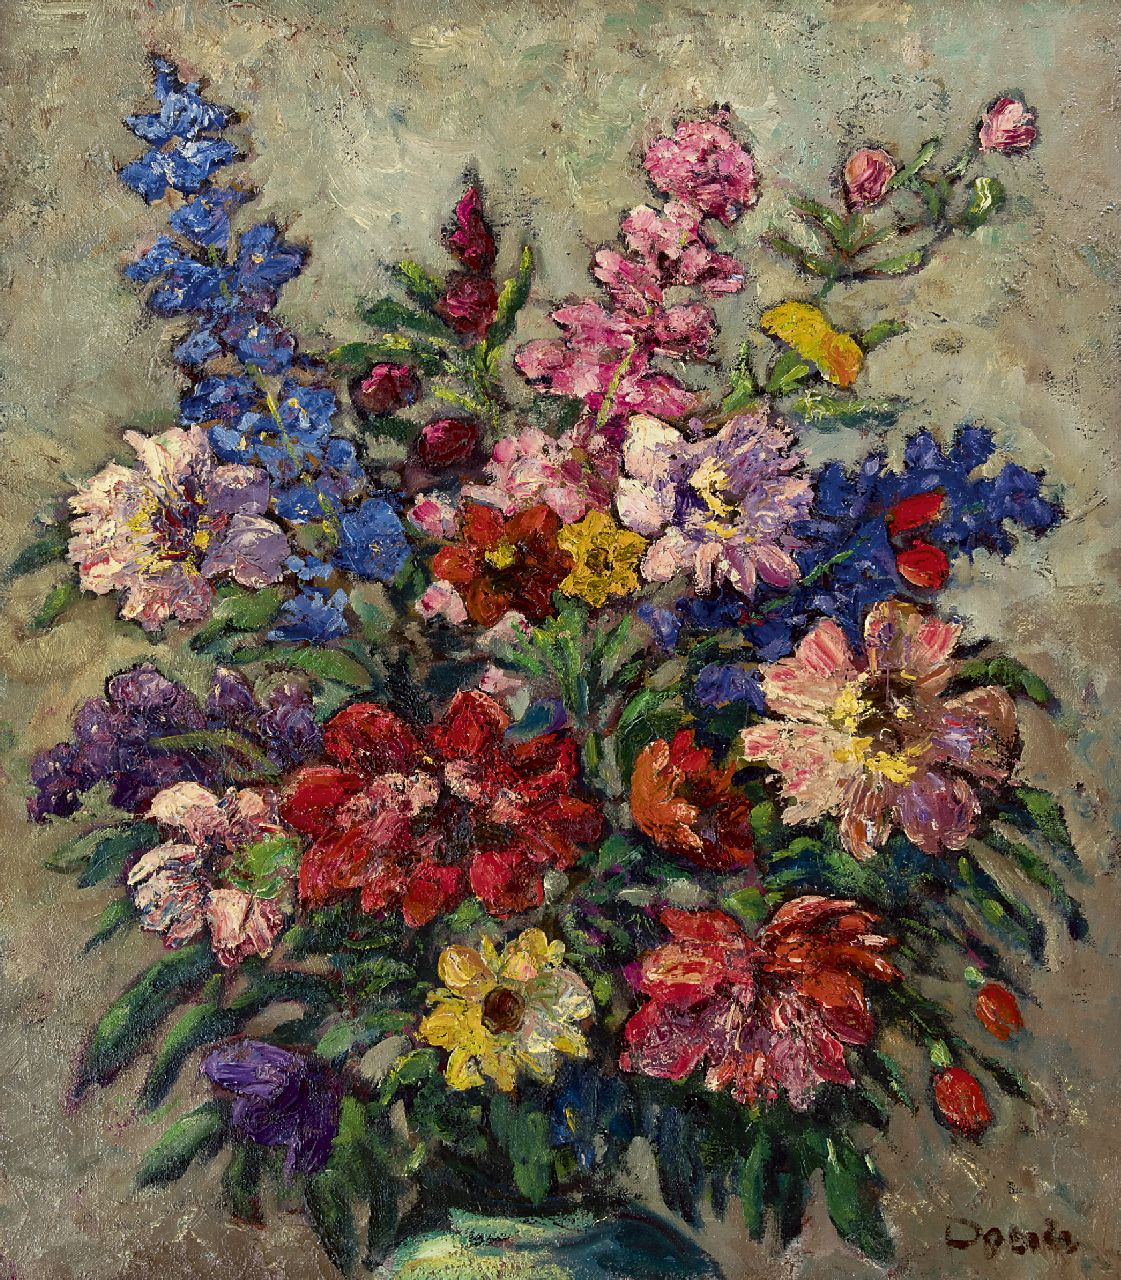 Doeser J.J.  | 'Jacobus' Johannes Doeser, Flower still life, oil on canvas 85.0 x 76.0 cm, signed l.r.